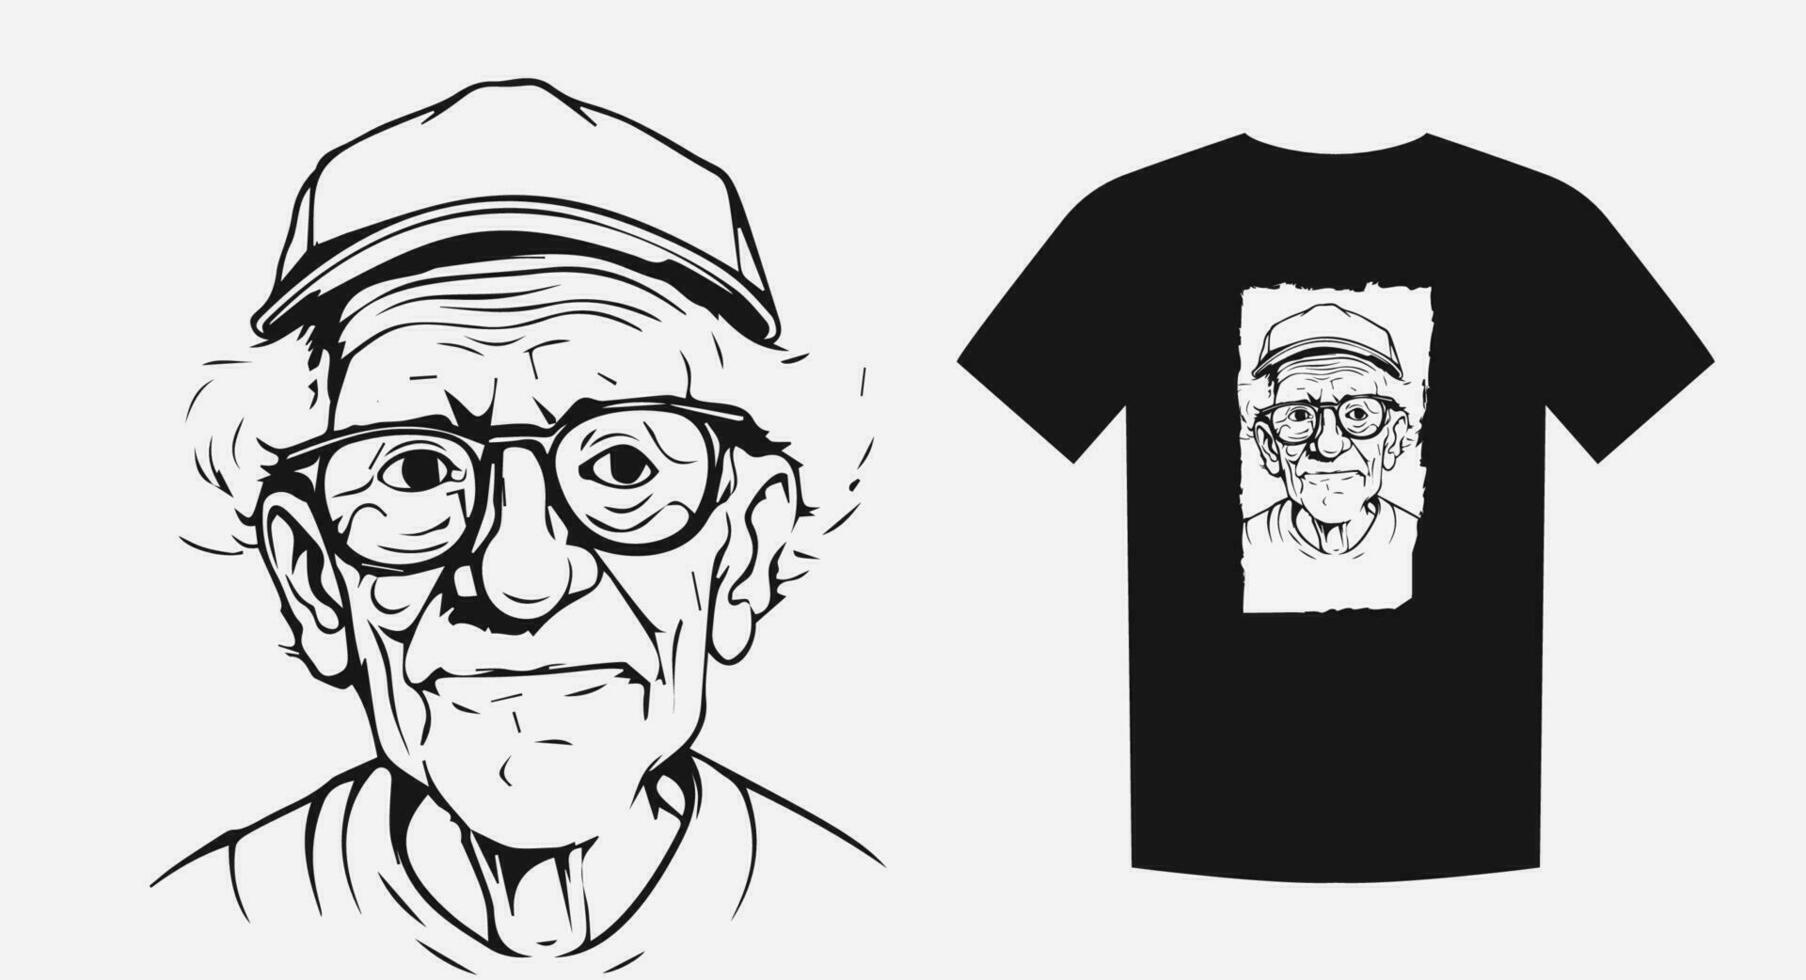 årgång vektor porträtt av ett äldre man i en retro kontur stil. perfekt för skjortor, logotyper, och tatueringar. tidlös och fängslande. vektor illustration.